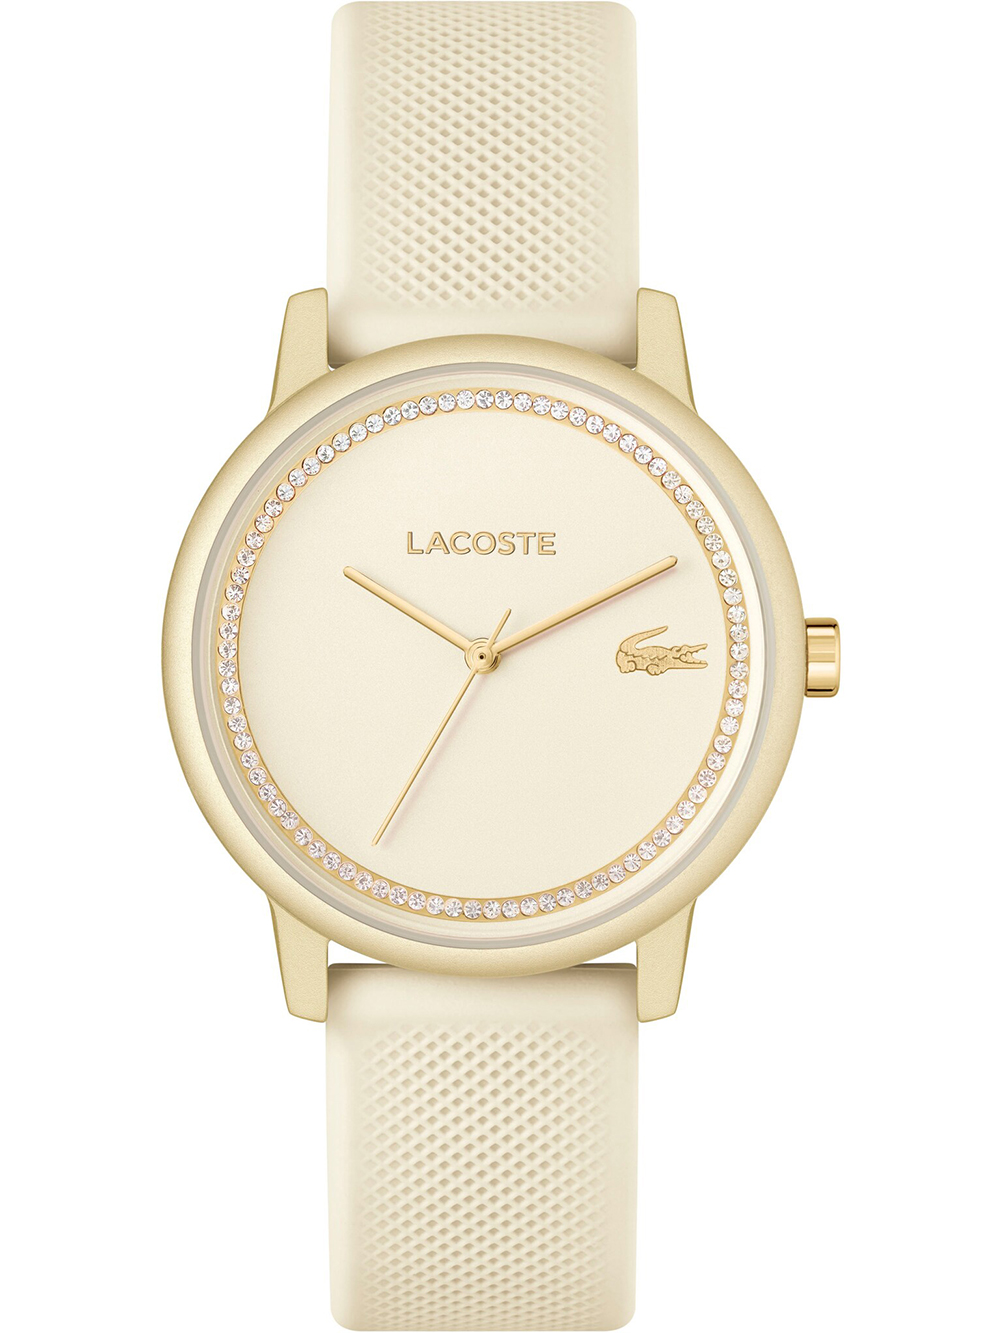 Dámské hodinky Lacoste 2001288 12.12 GO